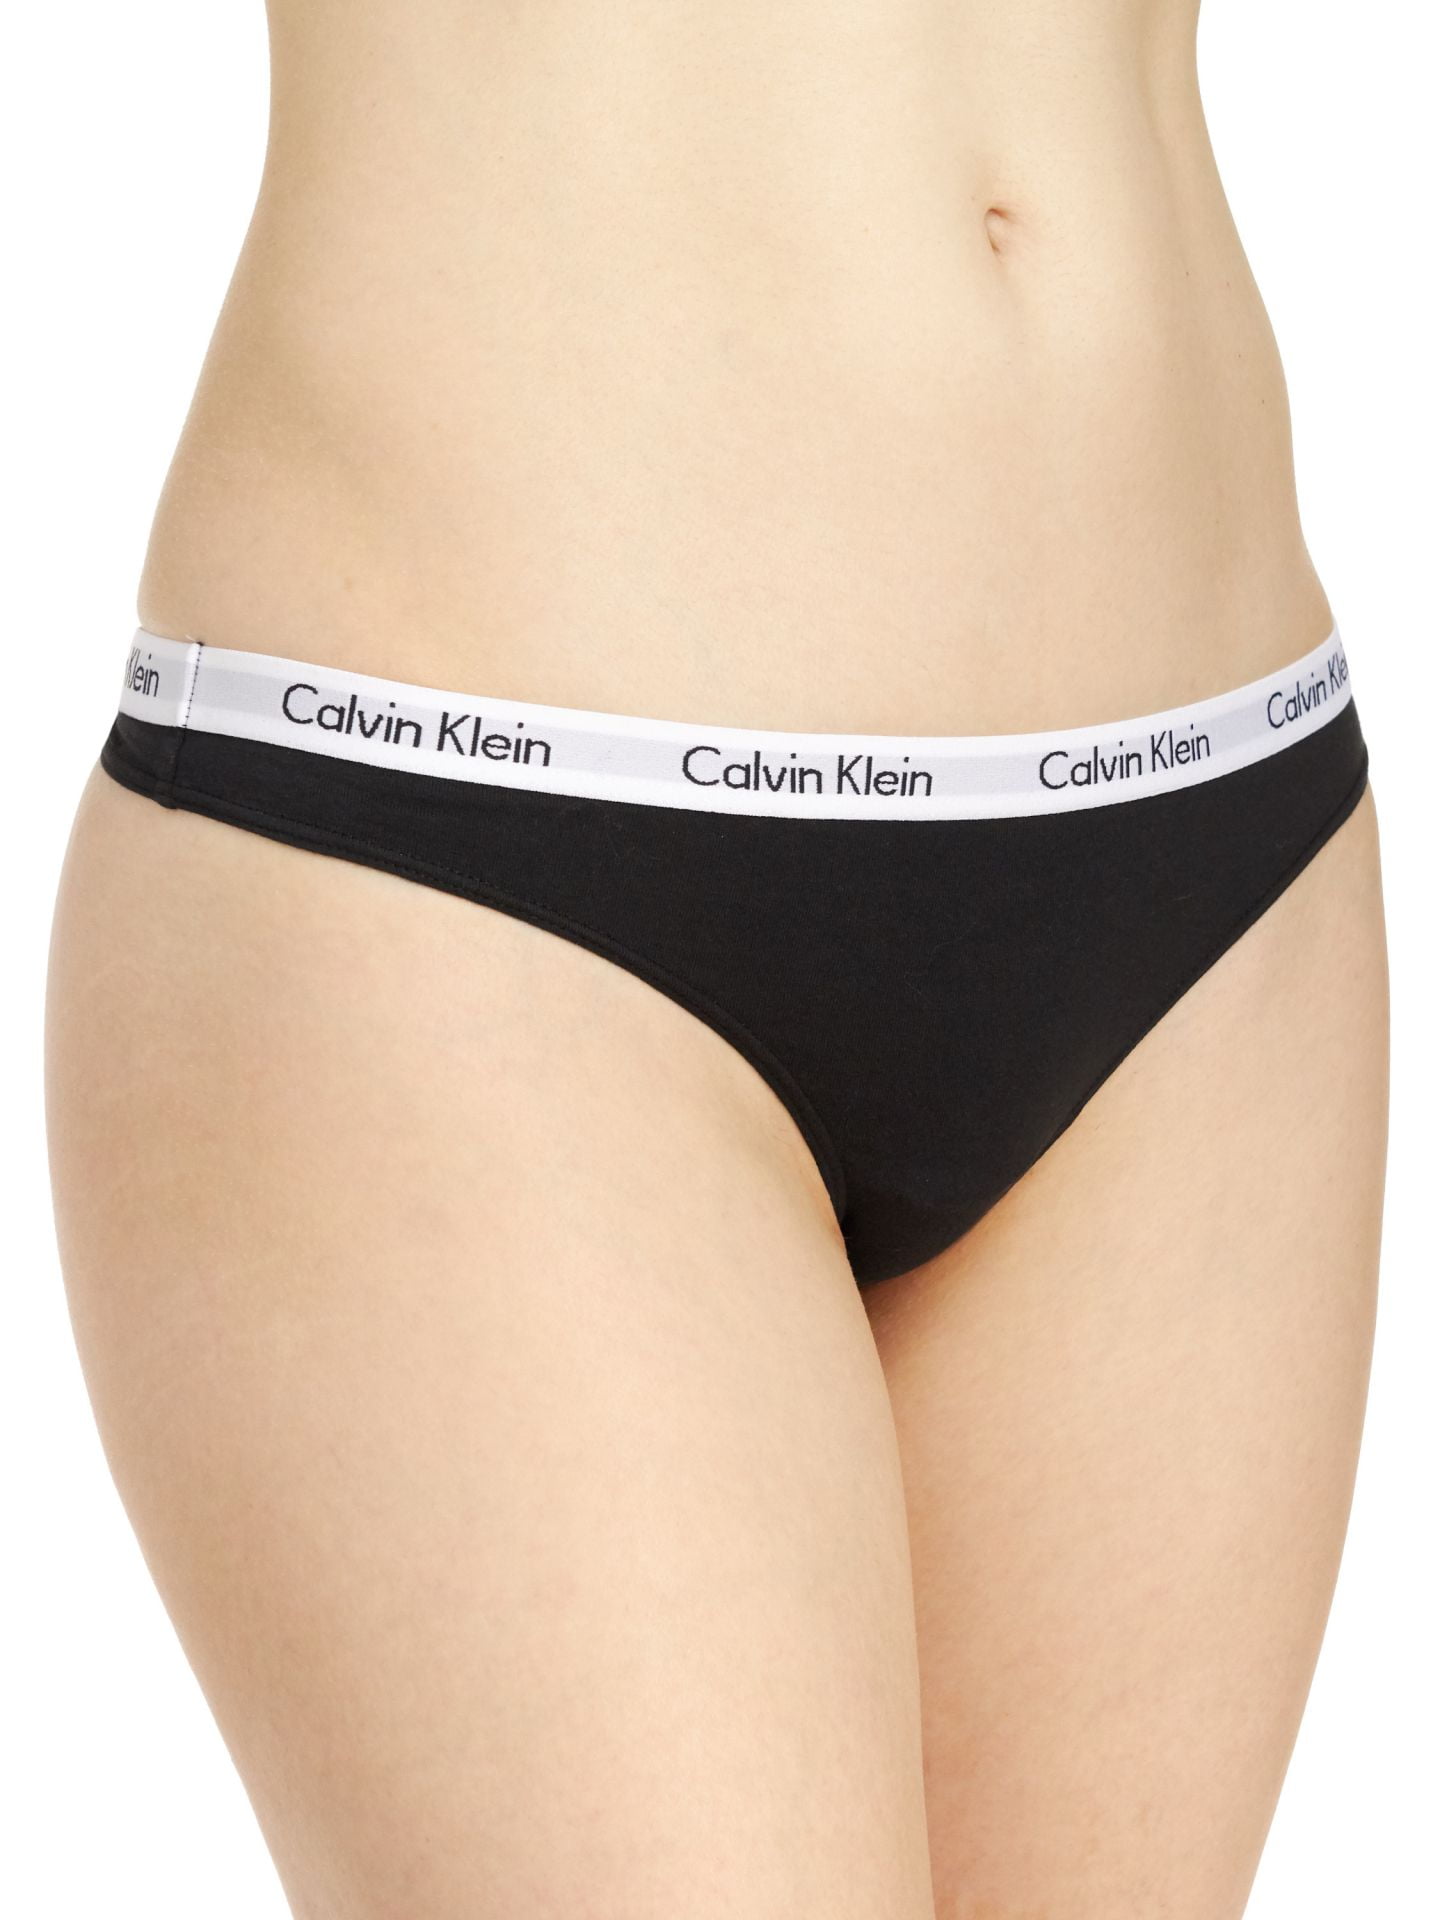 Calvin Klein Women\'s Large Pack, Thong Black/Grey/White, - Carousel 3